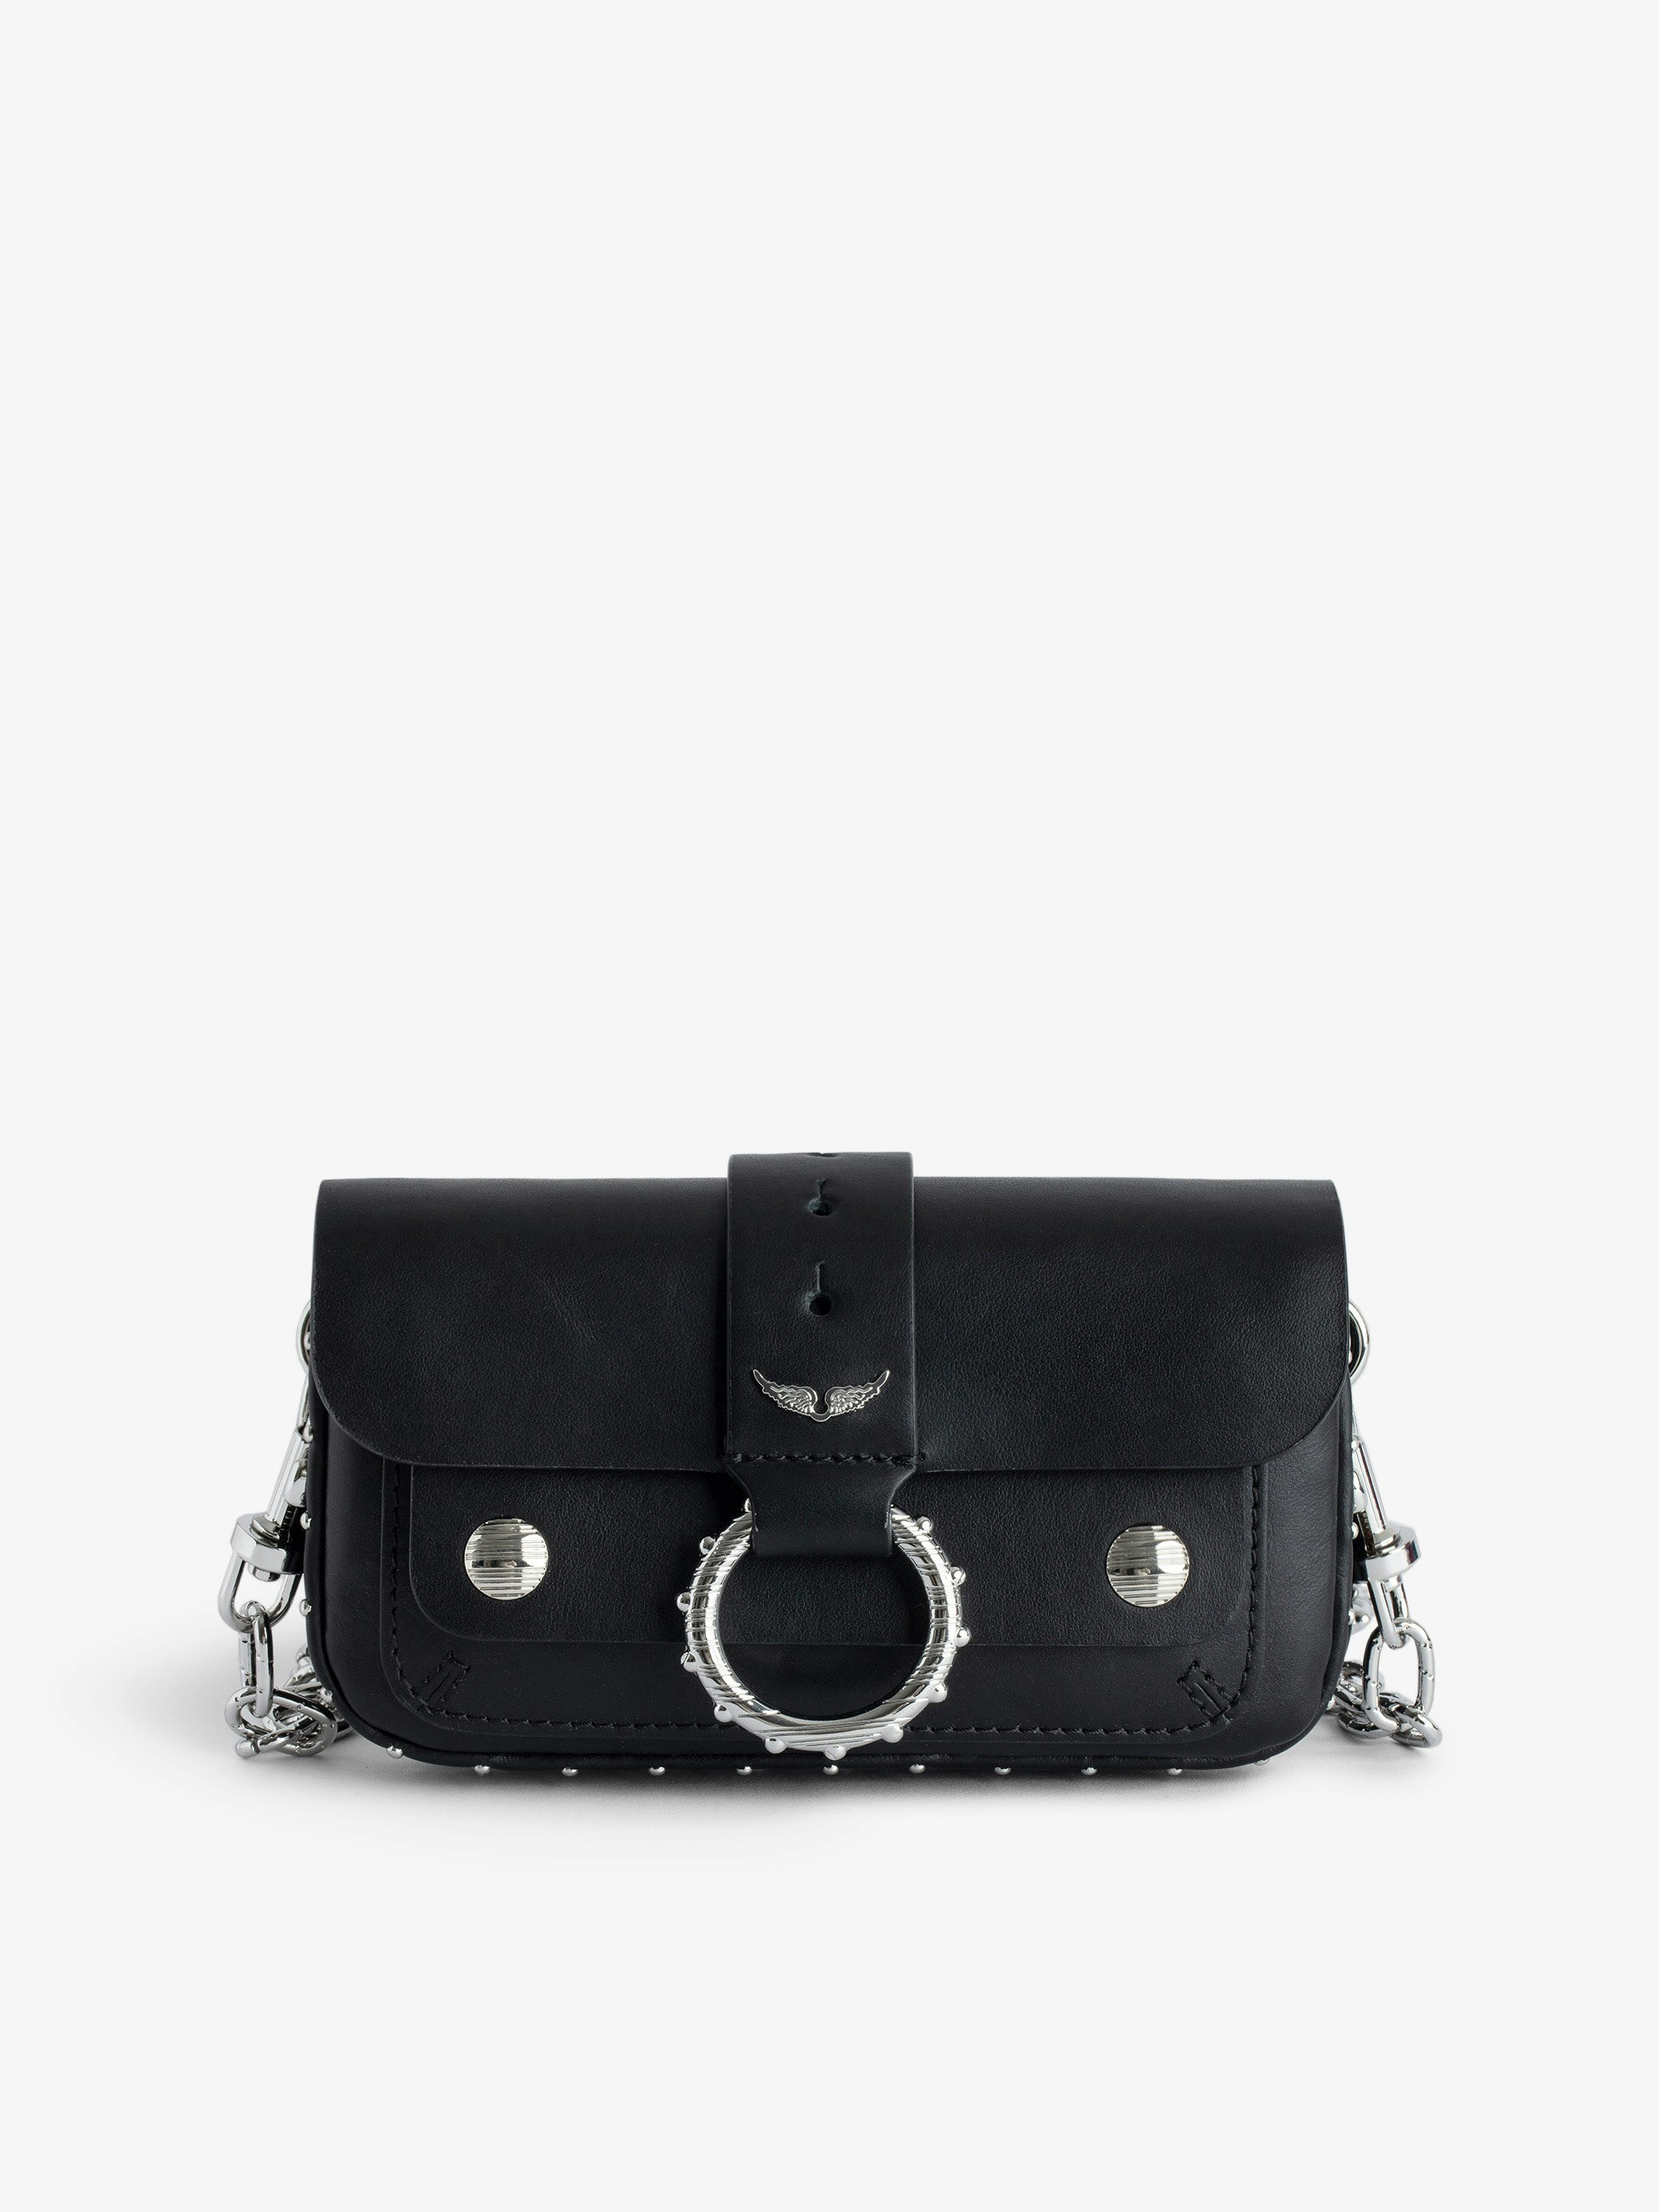 Borsa Kate Wallet - Designed by Kate Moss for Zadig&Voltaire.  Mini borsa in pelle liscia nera con anello e catena in metallo.